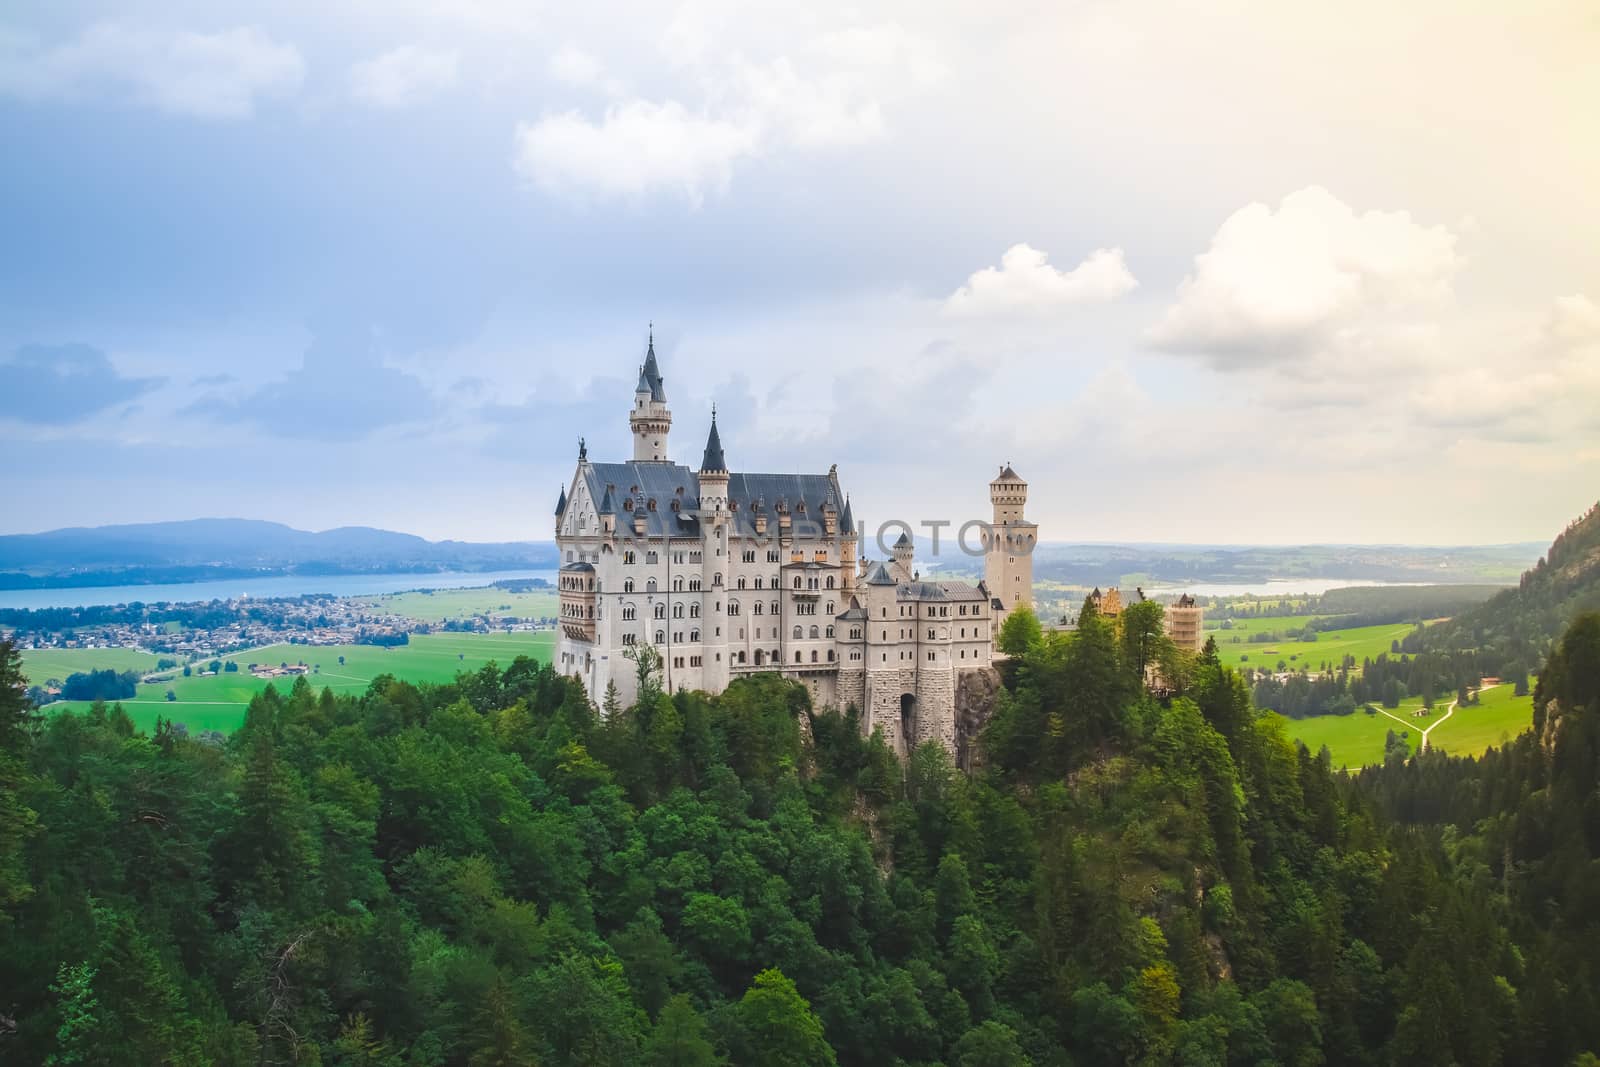 Neuschwanstein castle in summer landscape near Munich in Bavaria, Germany